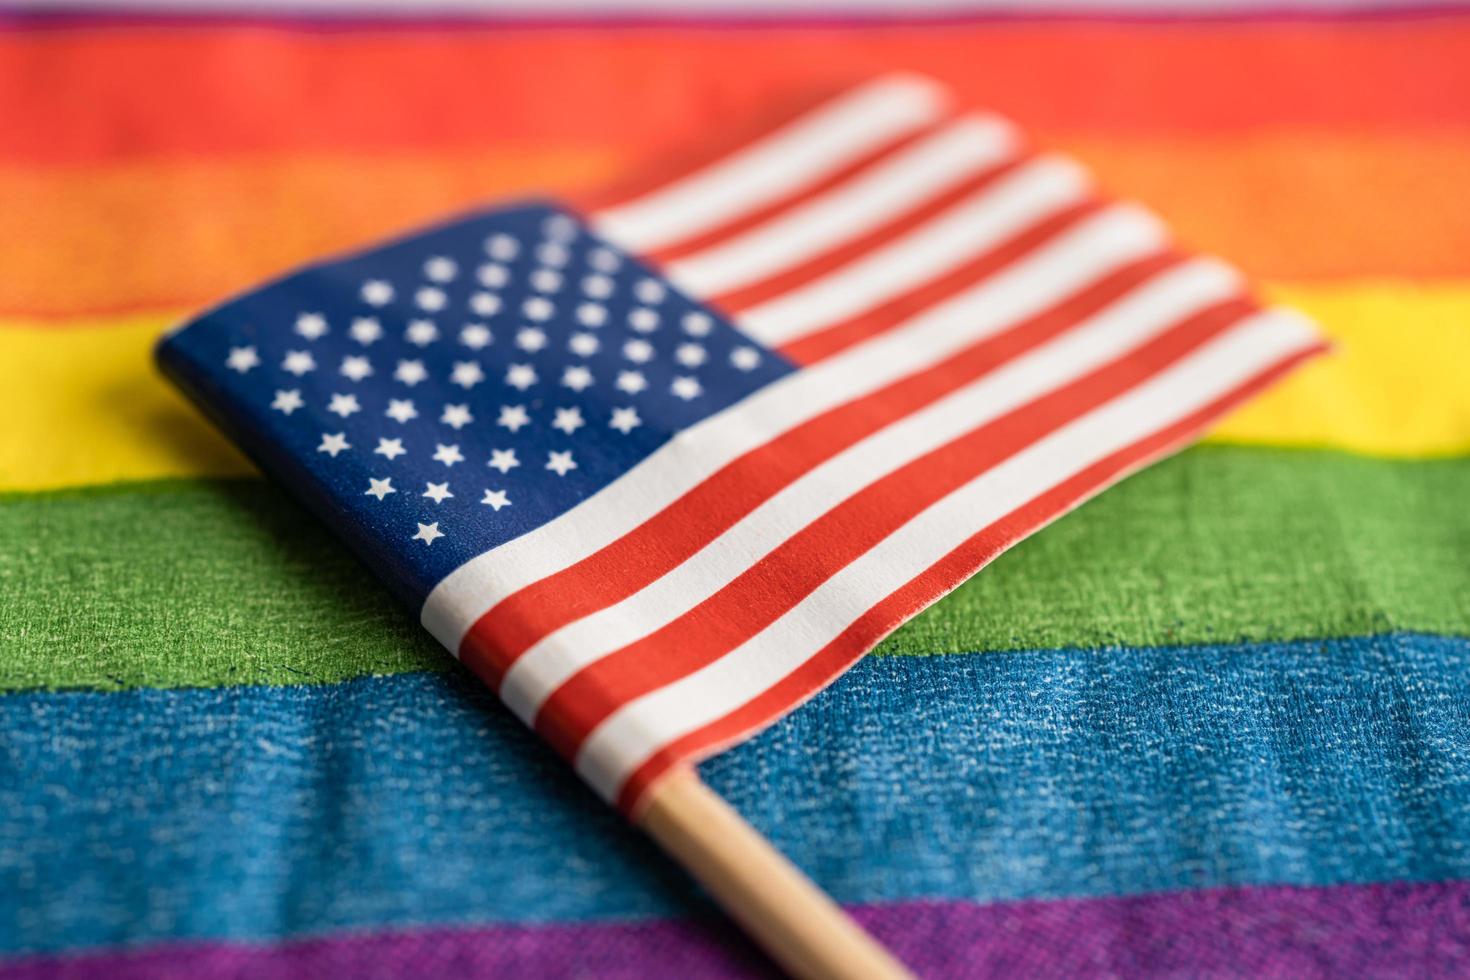 usa amerika flagga på regnbågsbakgrund symbol för hbt gay pride månad social rörelse regnbågsflagga är en symbol för lesbiska, homosexuella, bisexuella, transpersoner, mänskliga rättigheter, tolerans och fred. foto